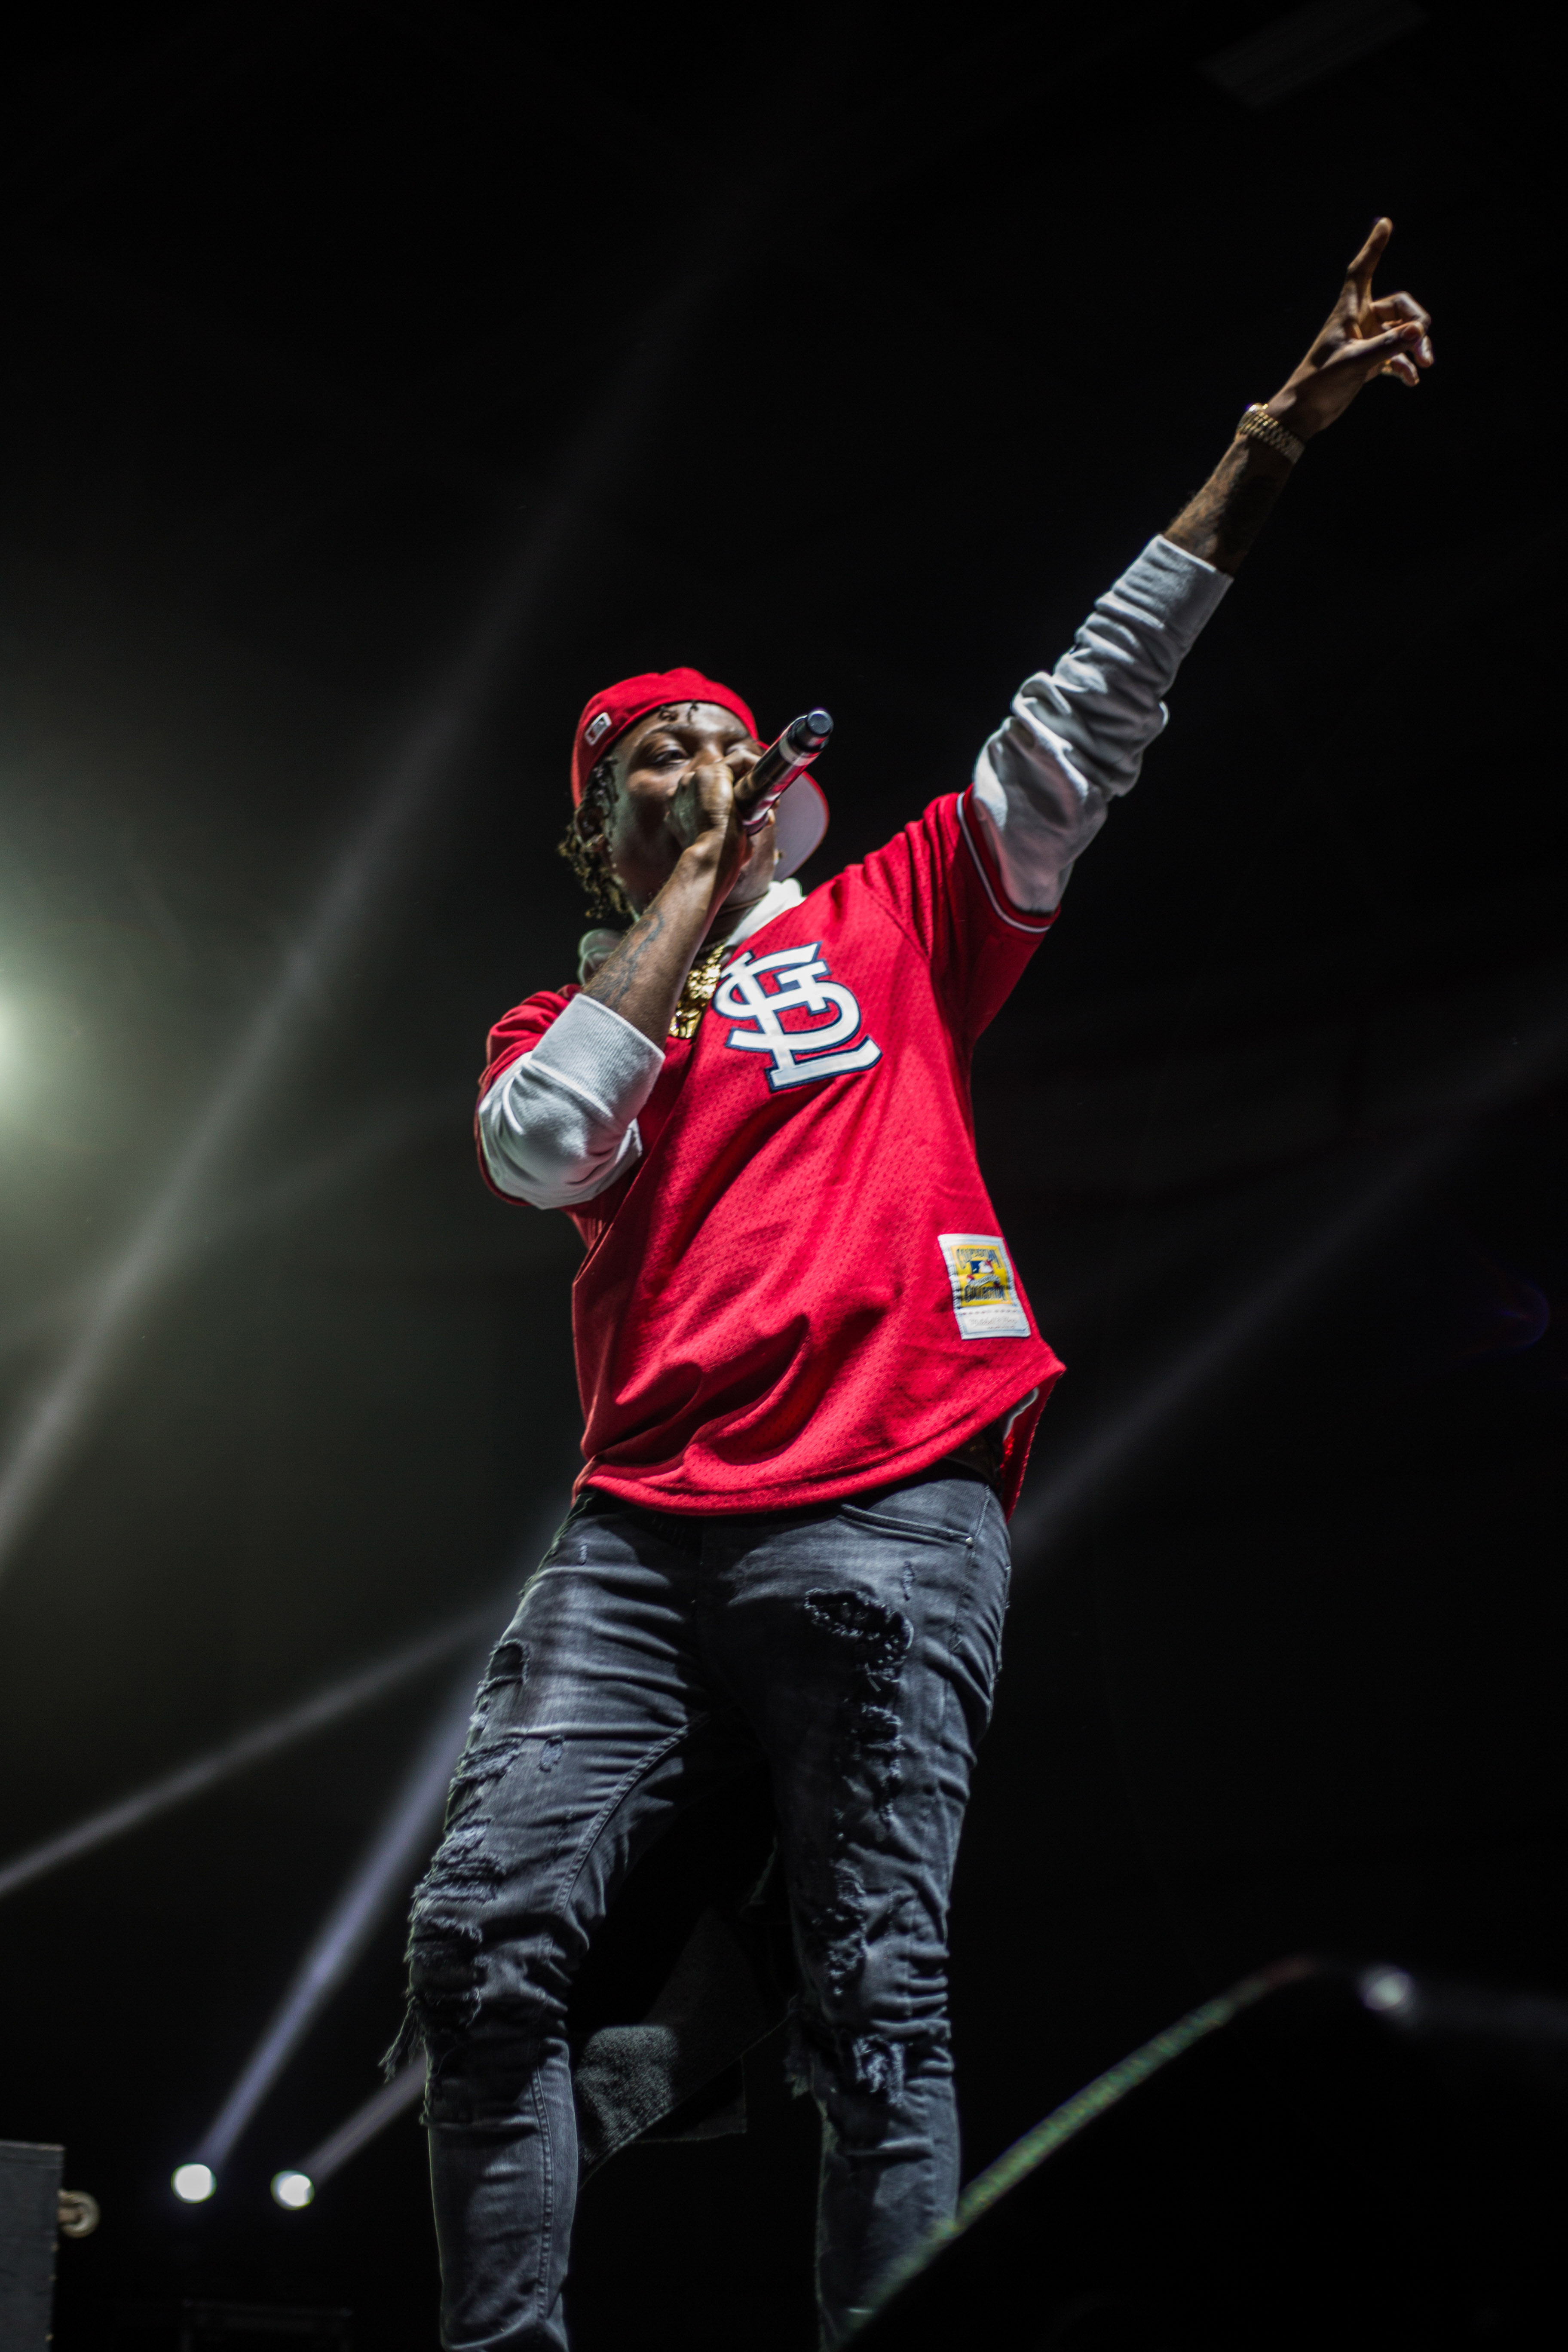 Playboi Carti review – cocksure catwalk energy from rising Atlanta rapper, Rap